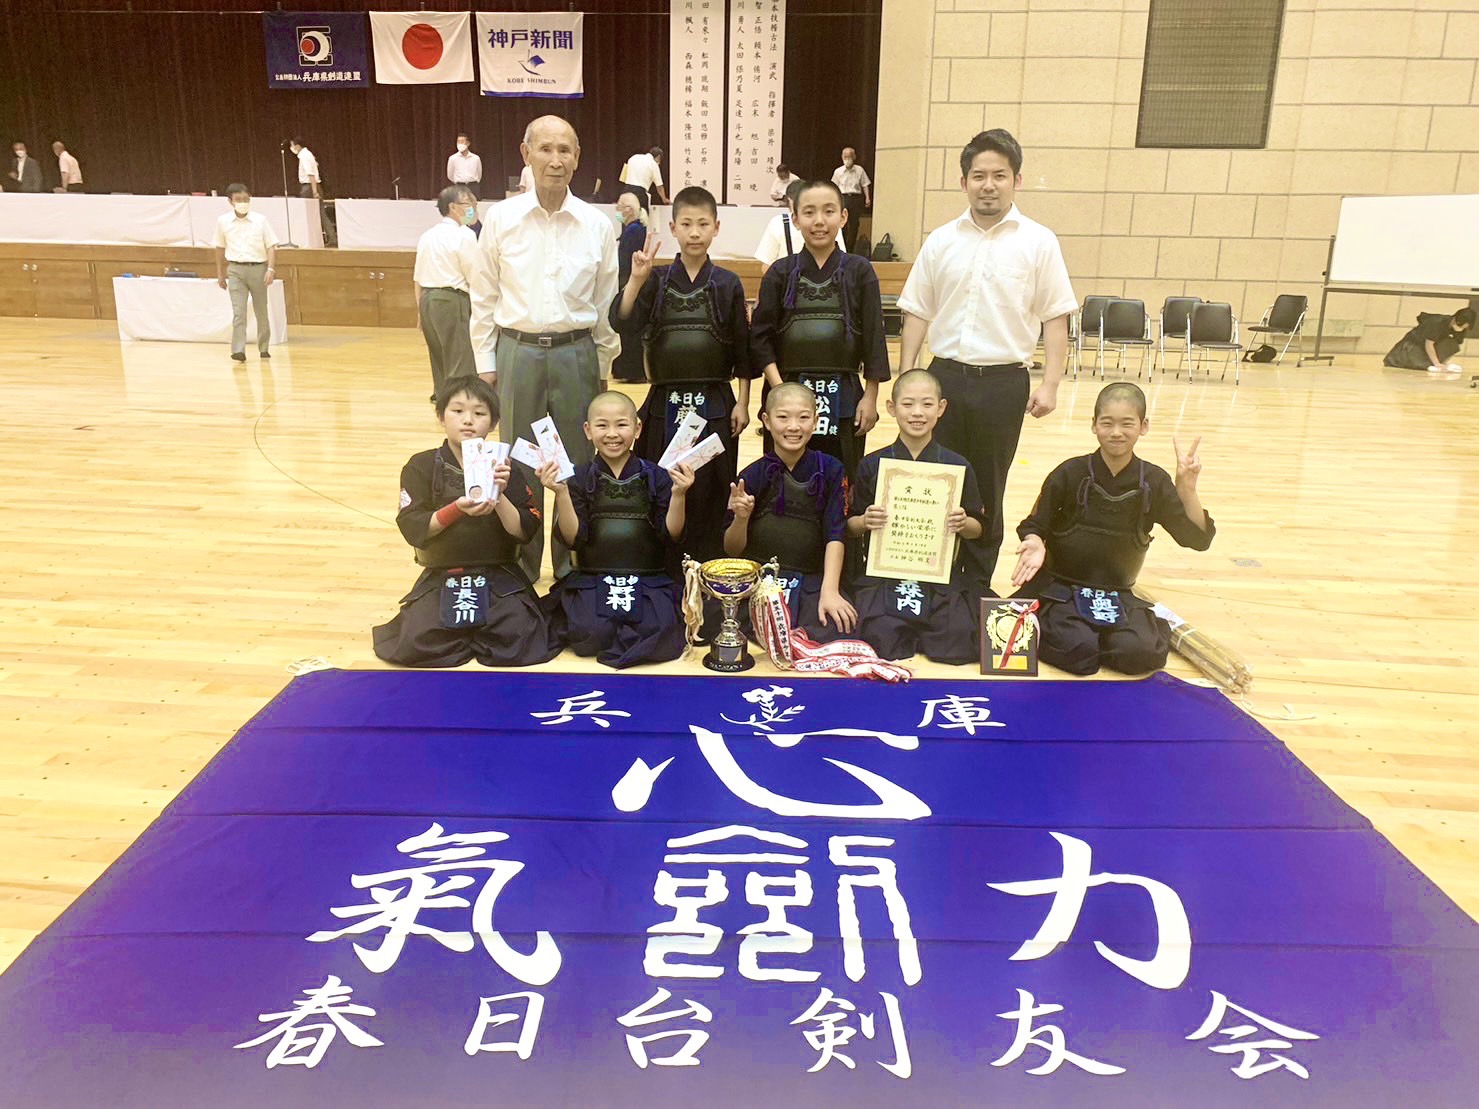 第56回兵庫県少年剣道の集いに参加しました。